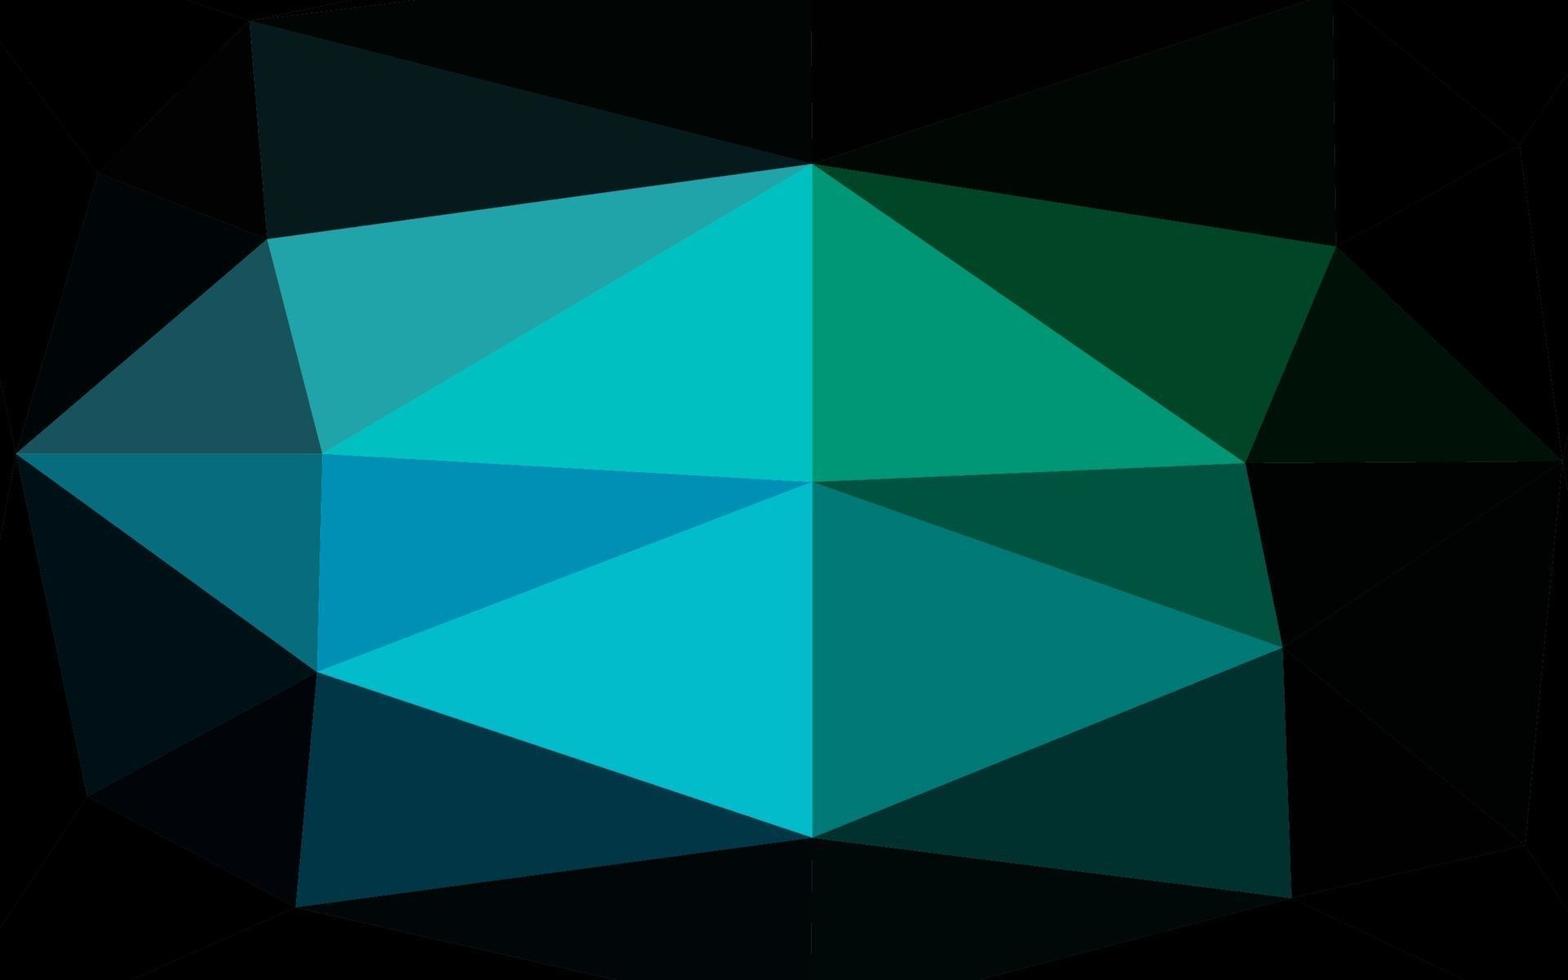 diseño abstracto del polígono del vector azul claro, verde.